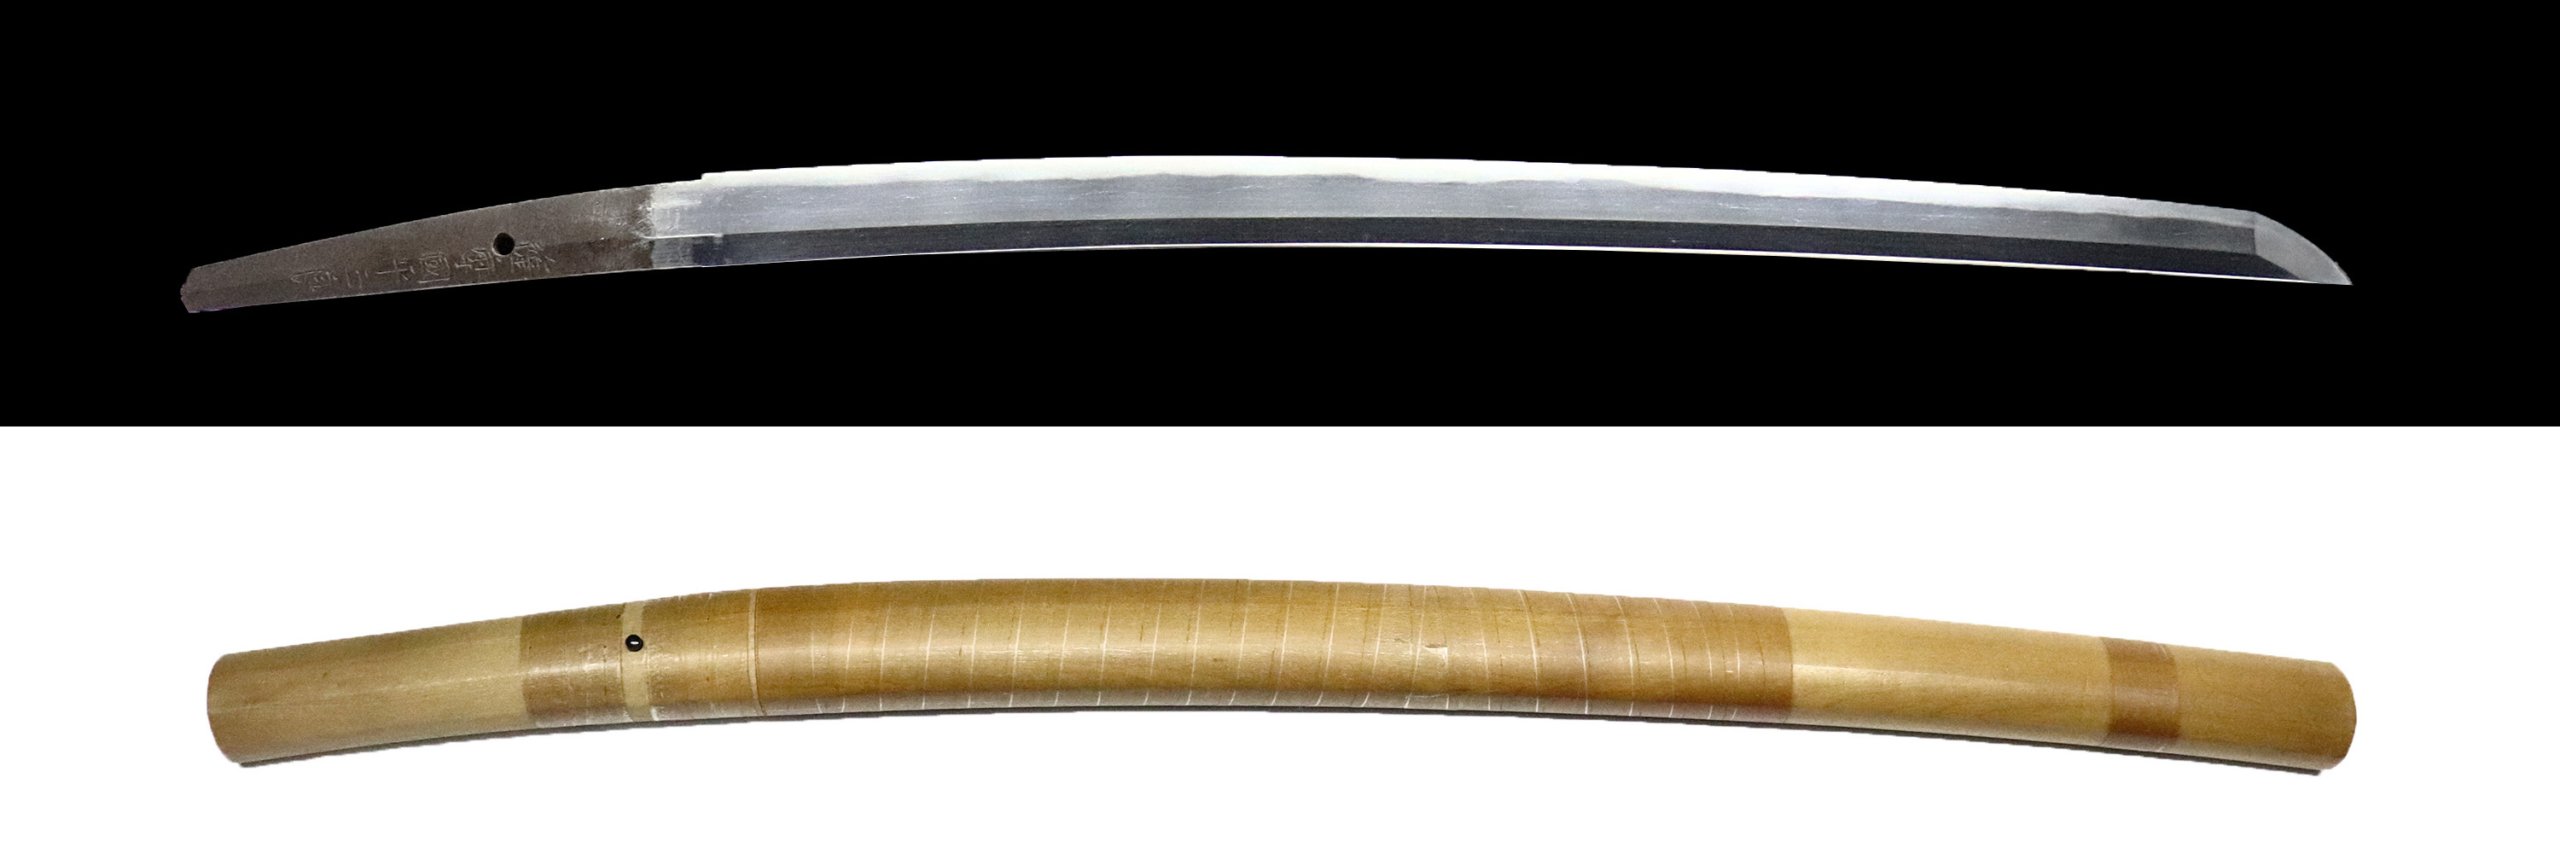 薩摩国平正良(白鞘付)脇差 | 日本刀販売の「勇進堂」 | 刀剣・美術刀剣 